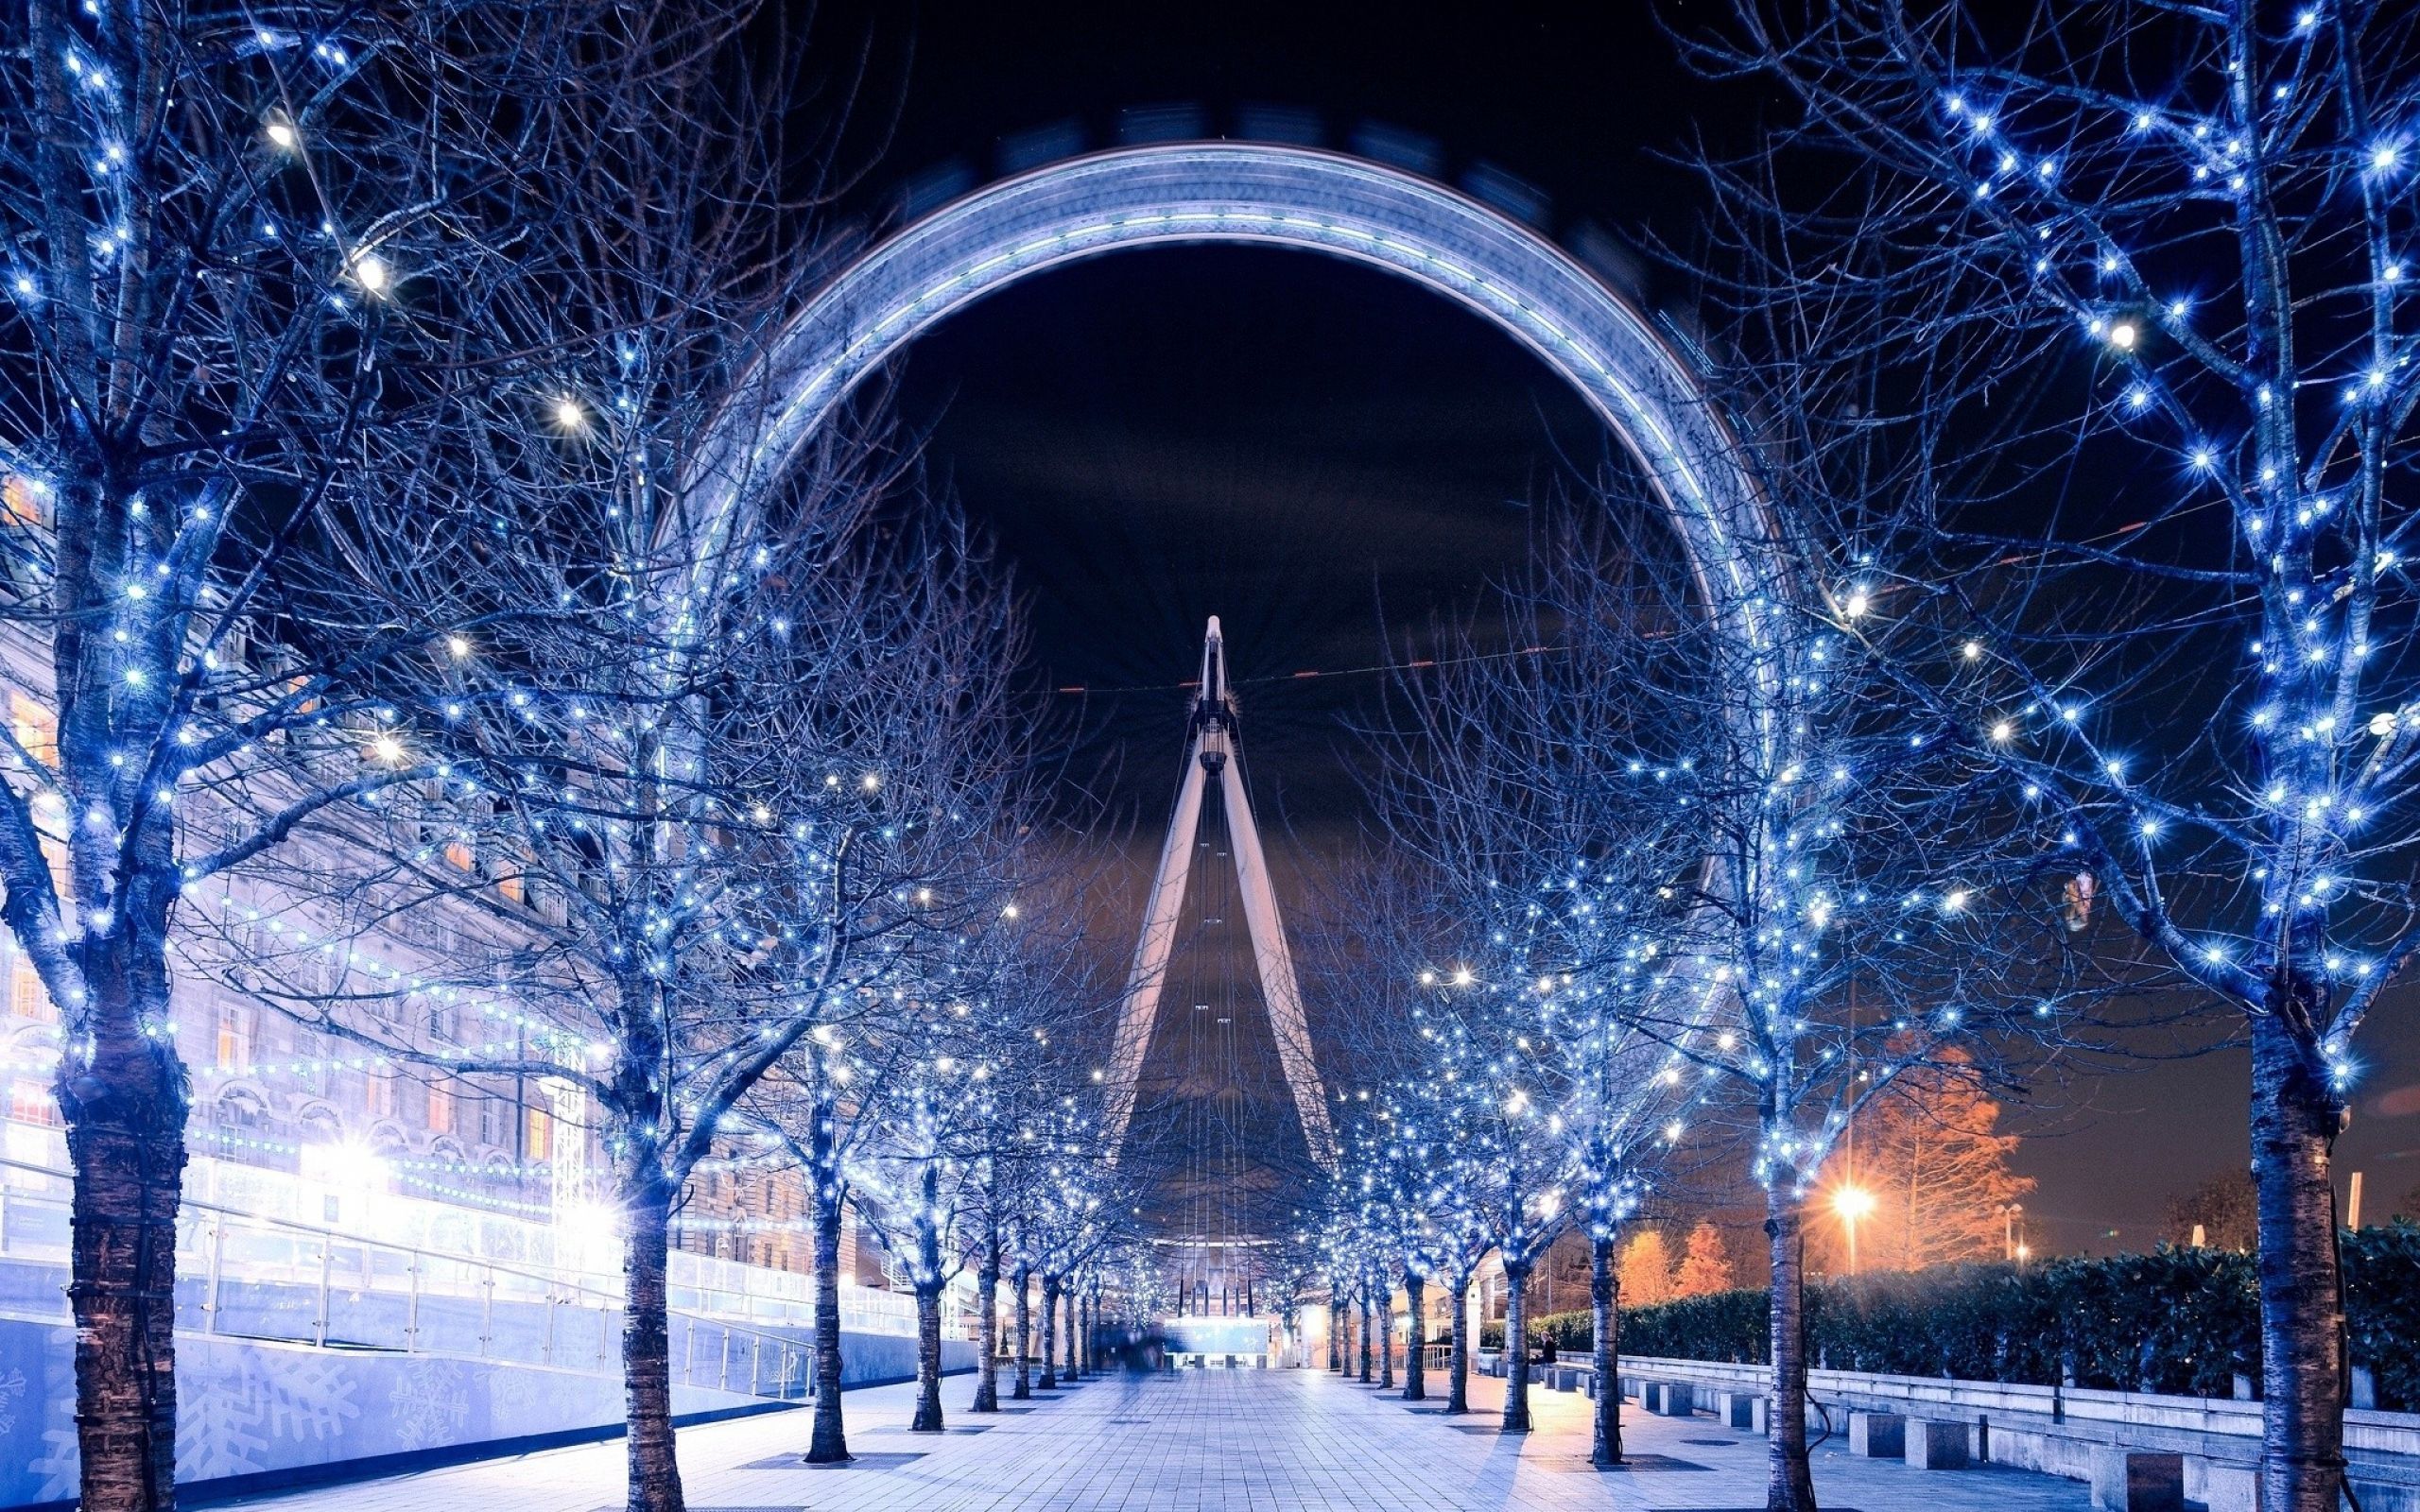 London Eye In A Winter Time [2560x1440] • R Wallpaper. London Wallpaper, City Wallpaper, World Wallpaper